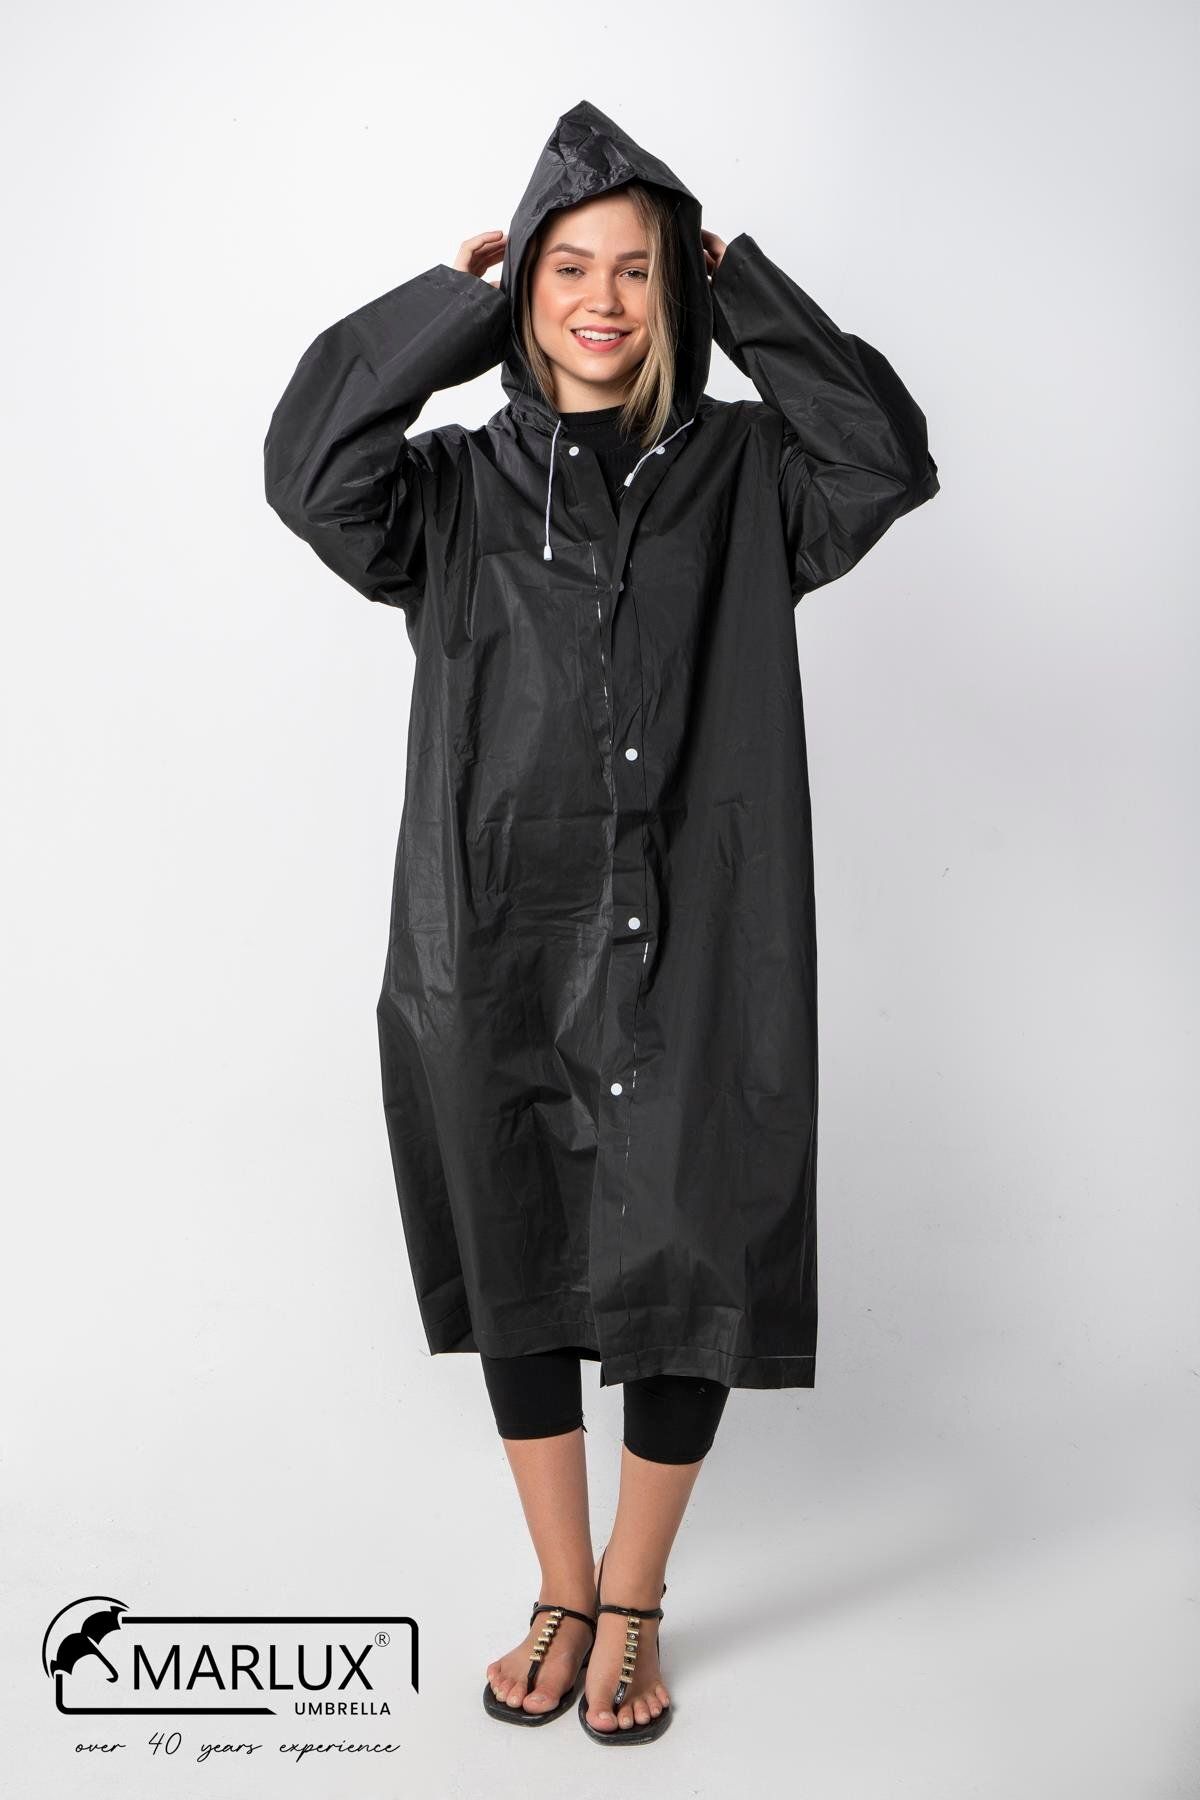 Marlux Kadın Erkek Yağmurluk Kapüşonlu Çıtçıtlı Eva Siyah Yağmurluk M21mrc881r03